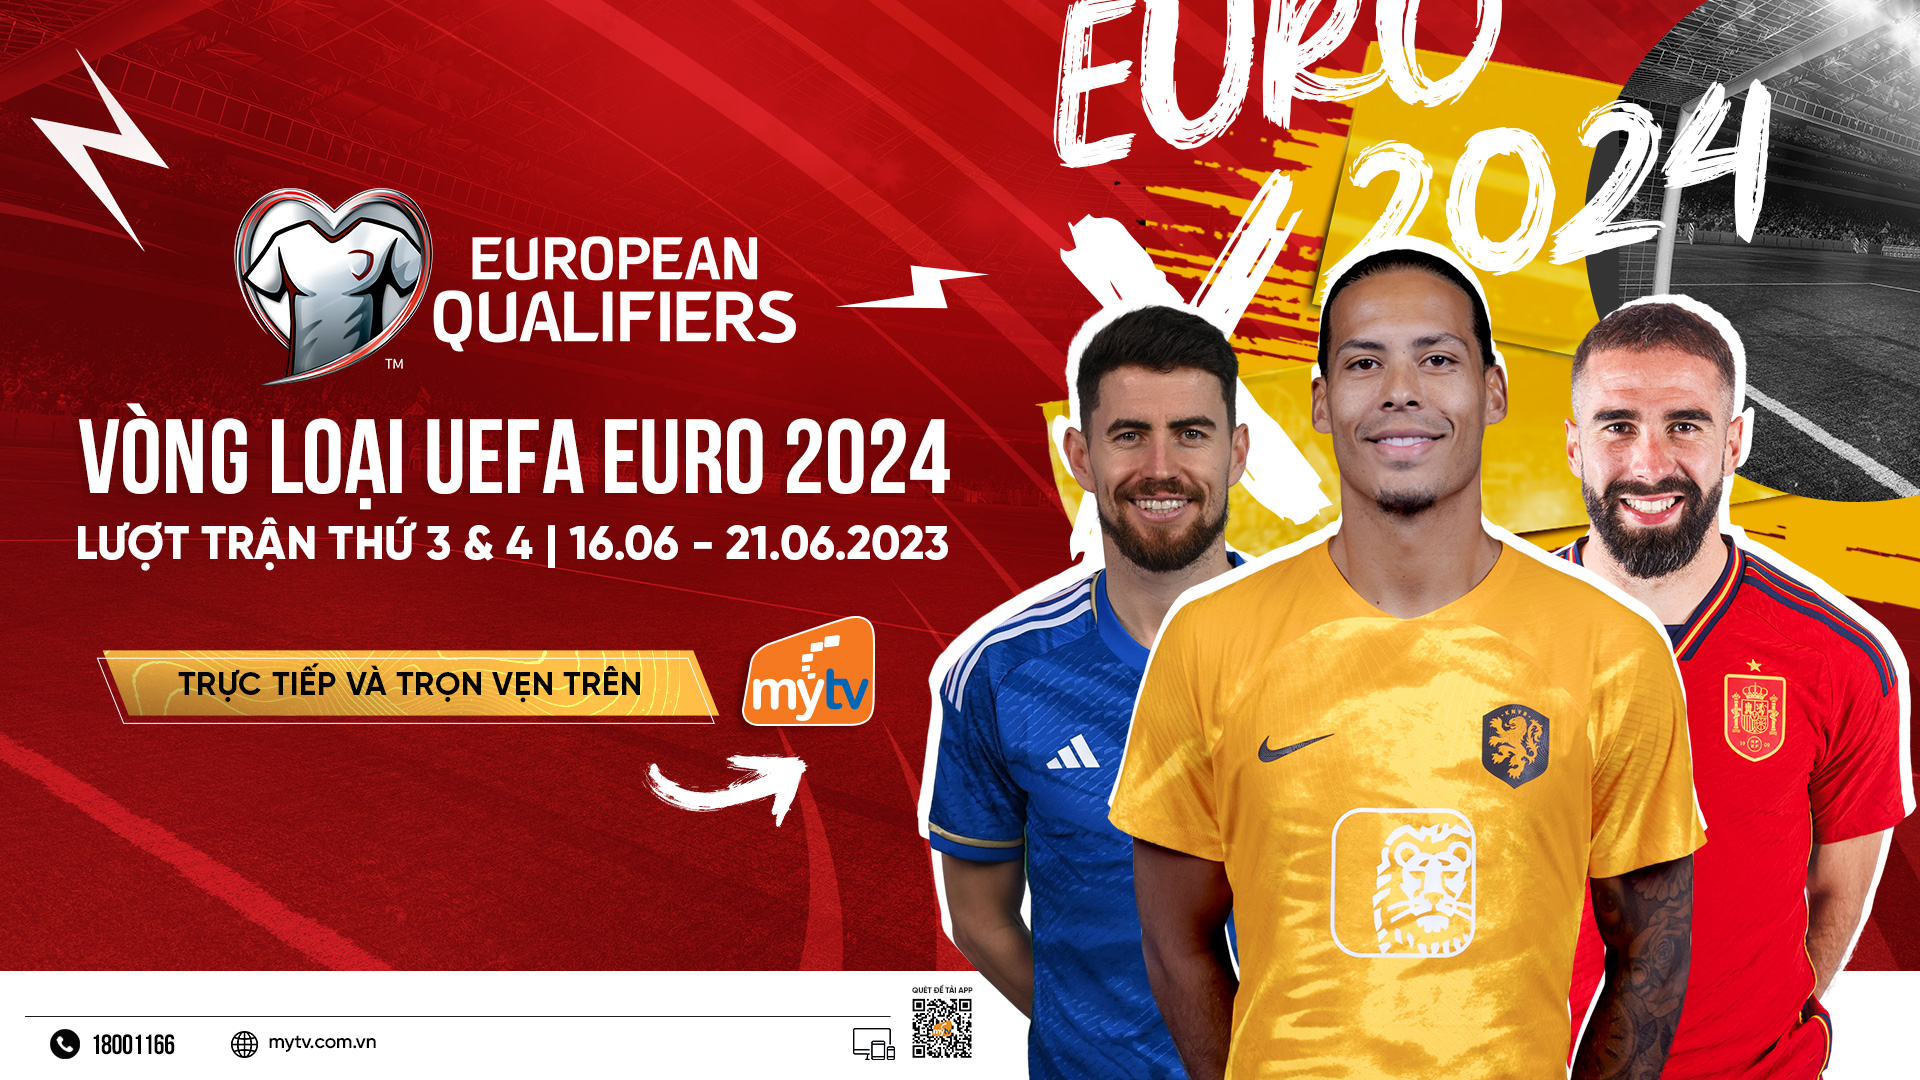 Vòng loại Euro 2024 - khởi tranh lượt trận 3,4 trực tiếp trên Truyền hình MyTV